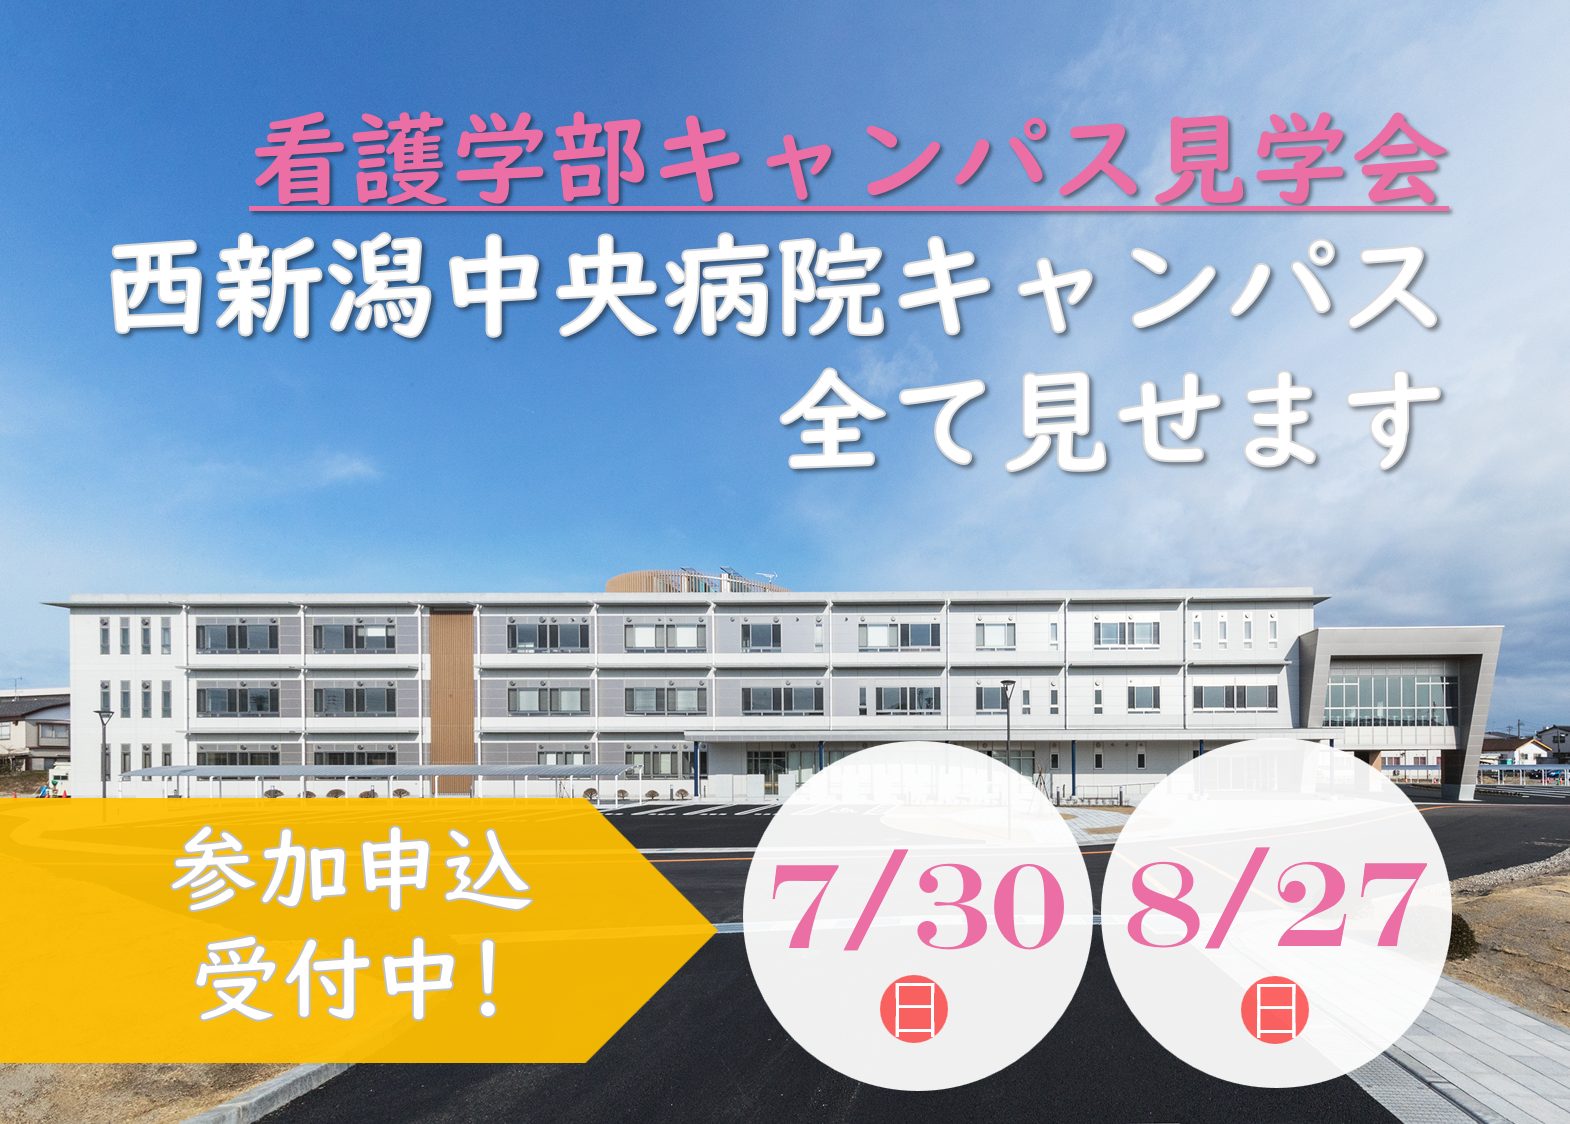 看護学部 西新潟中央病院キャンパス見学会を開催します